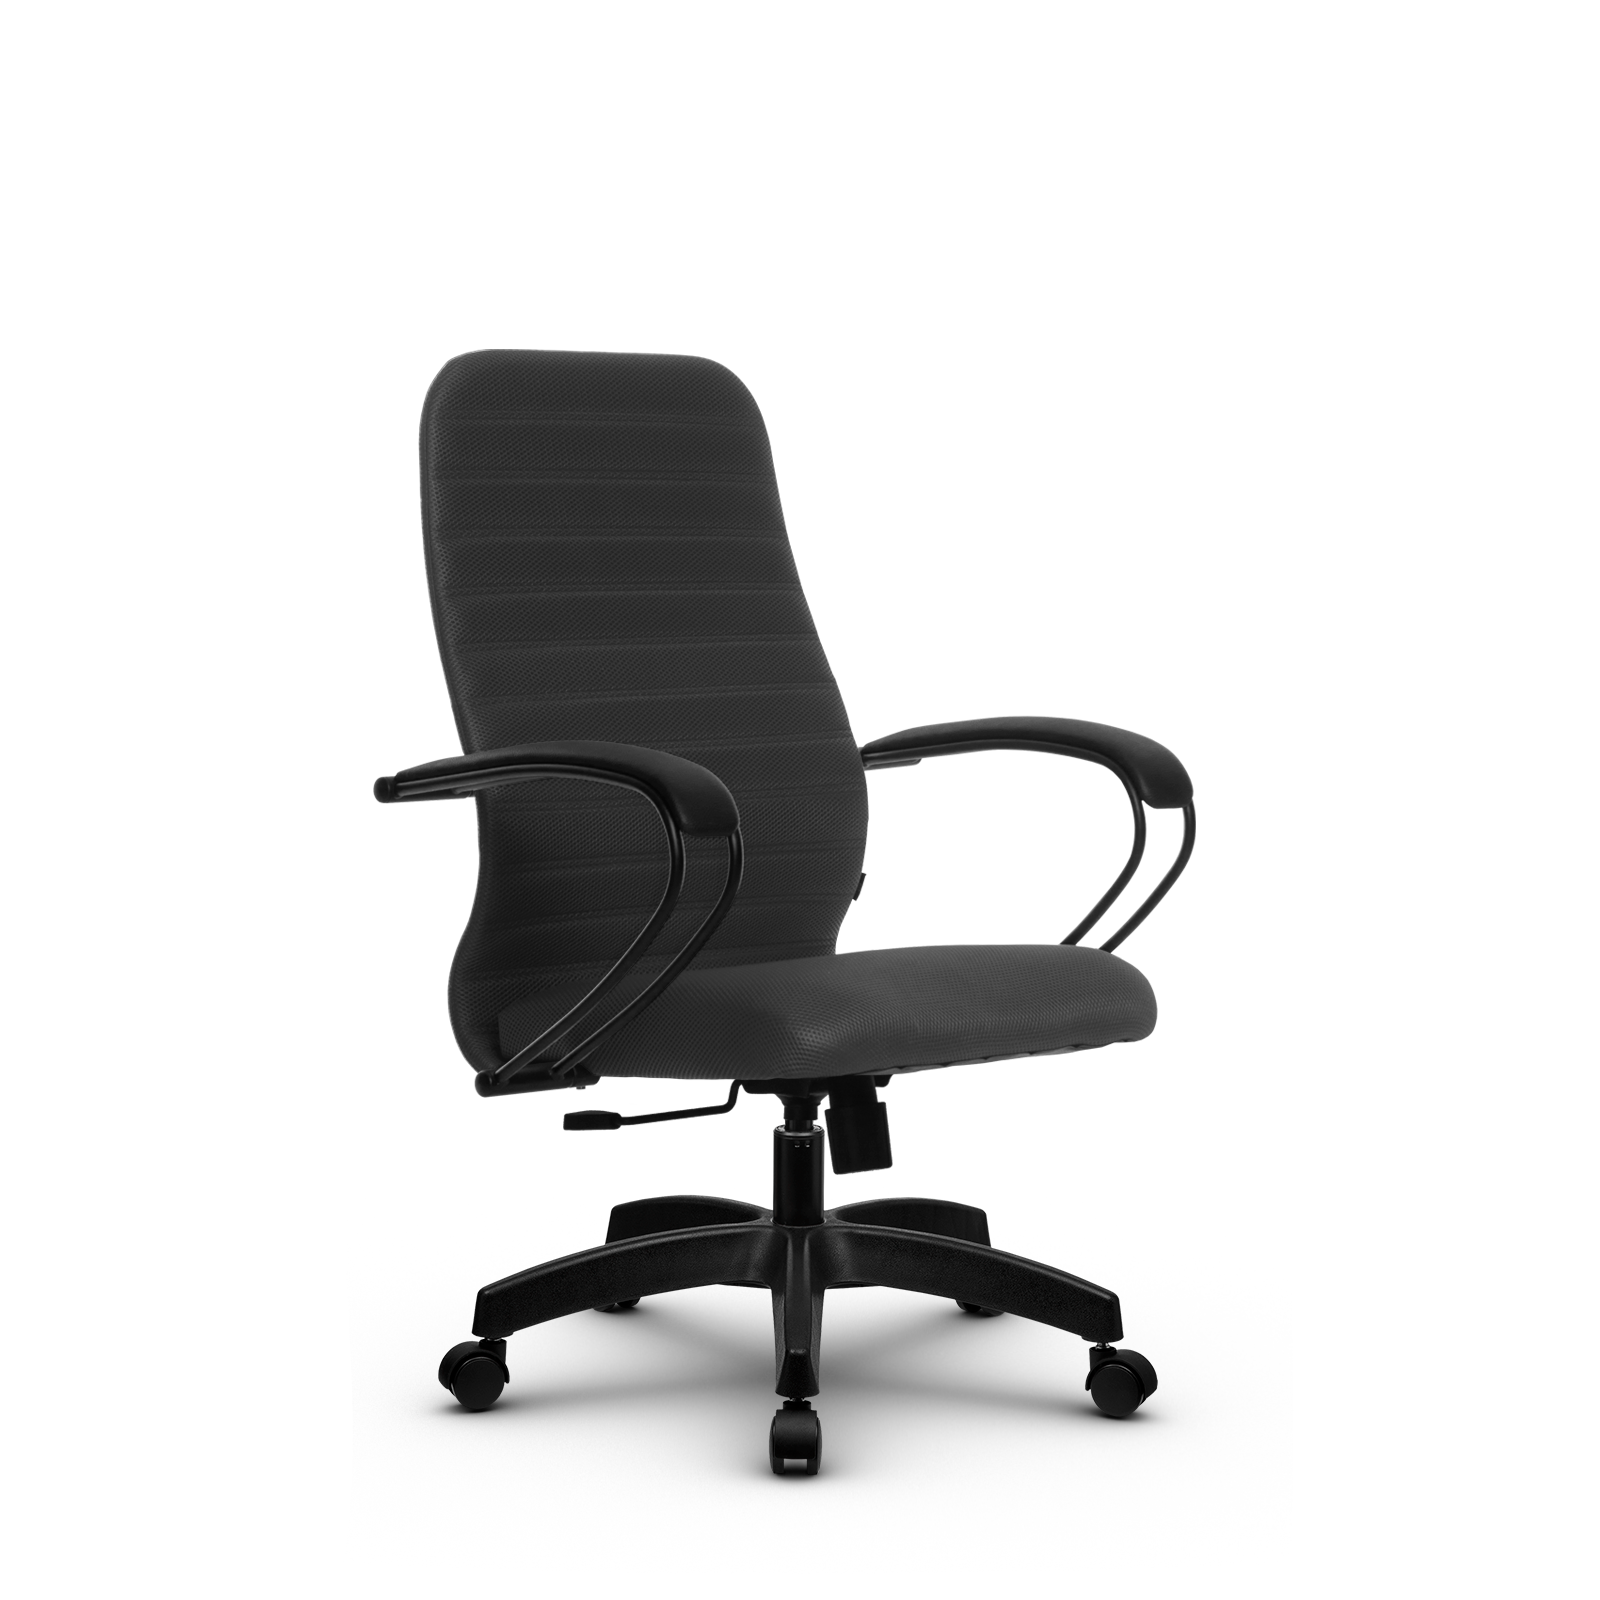 90488589 Офисное кресло Su z312458398 прочный сетчатый материал цвет темно-серый STLM-0248471 МЕТТА